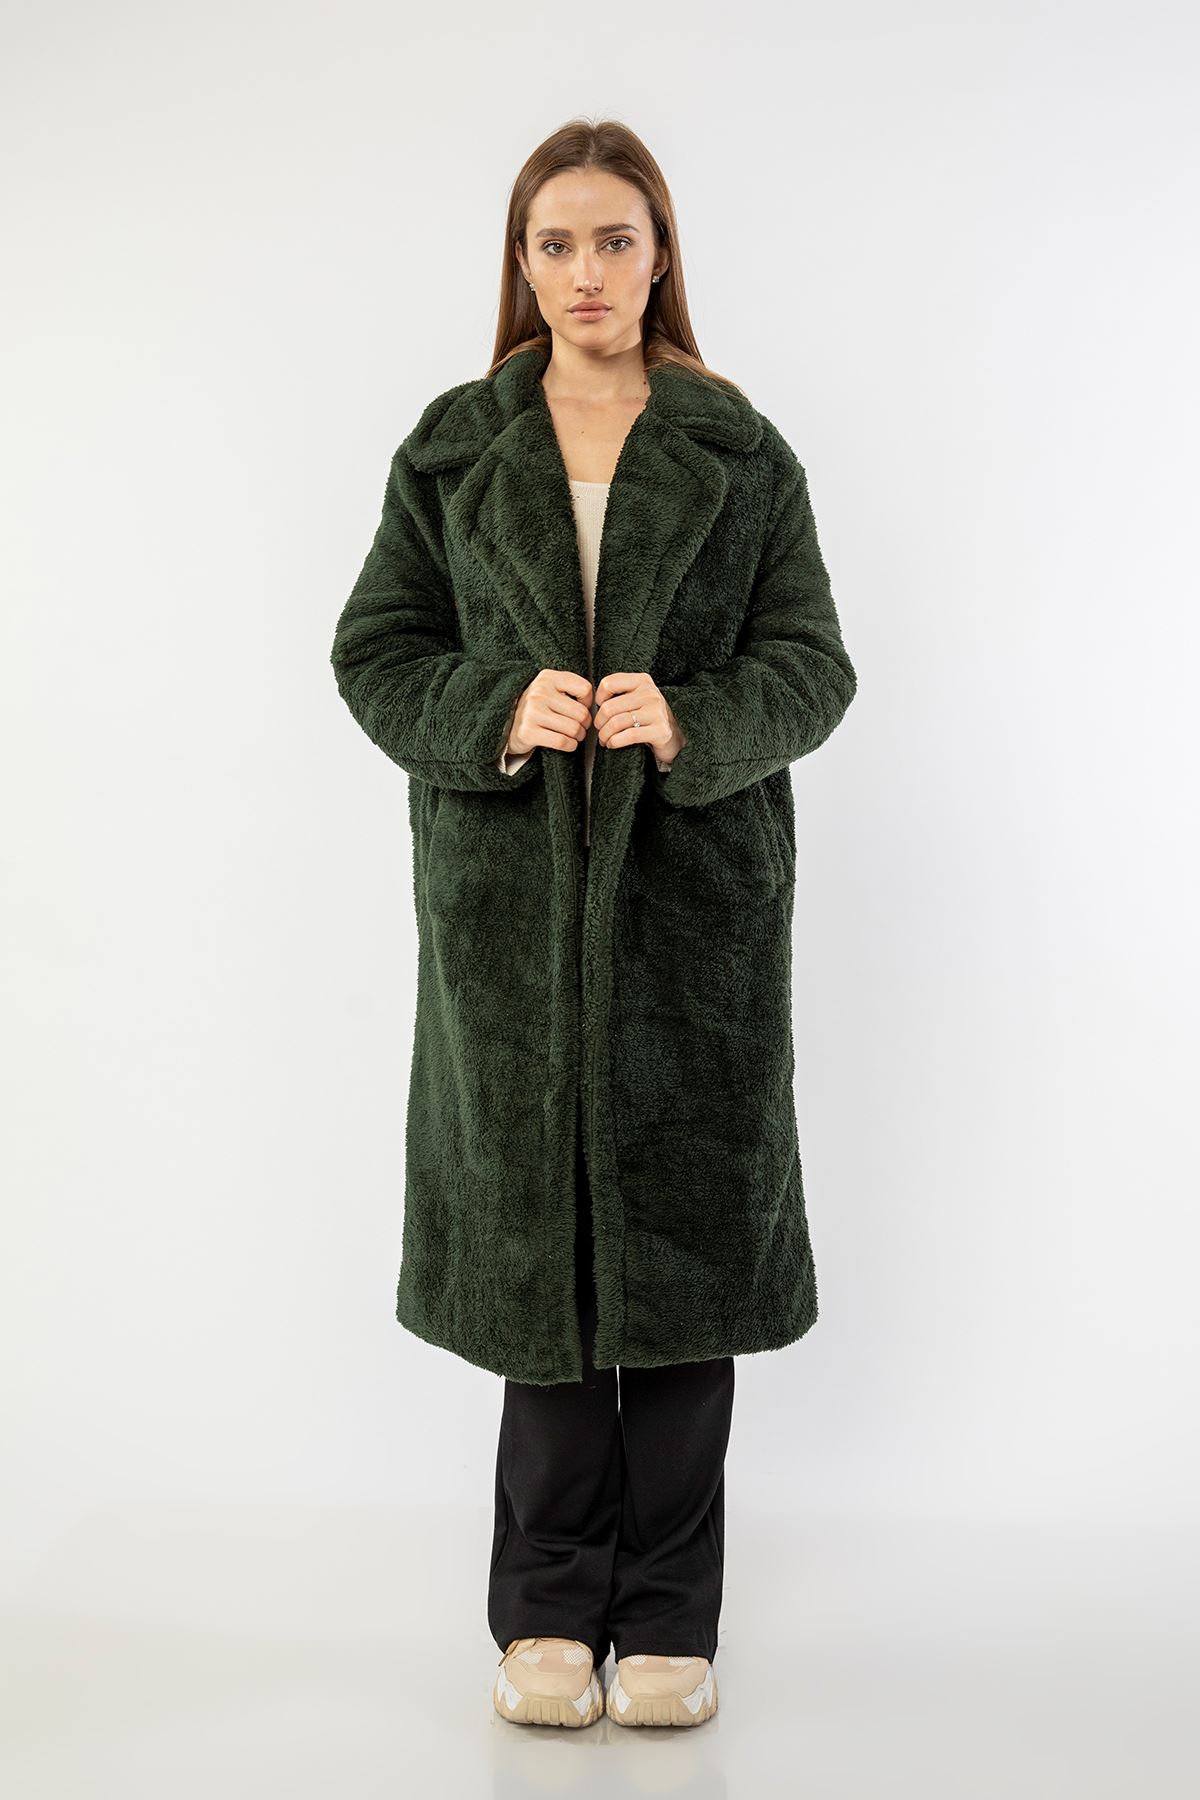 Velsoft Fabric Long Sleeve Revere Collar Long Oversize Women'S Coat - Khaki 